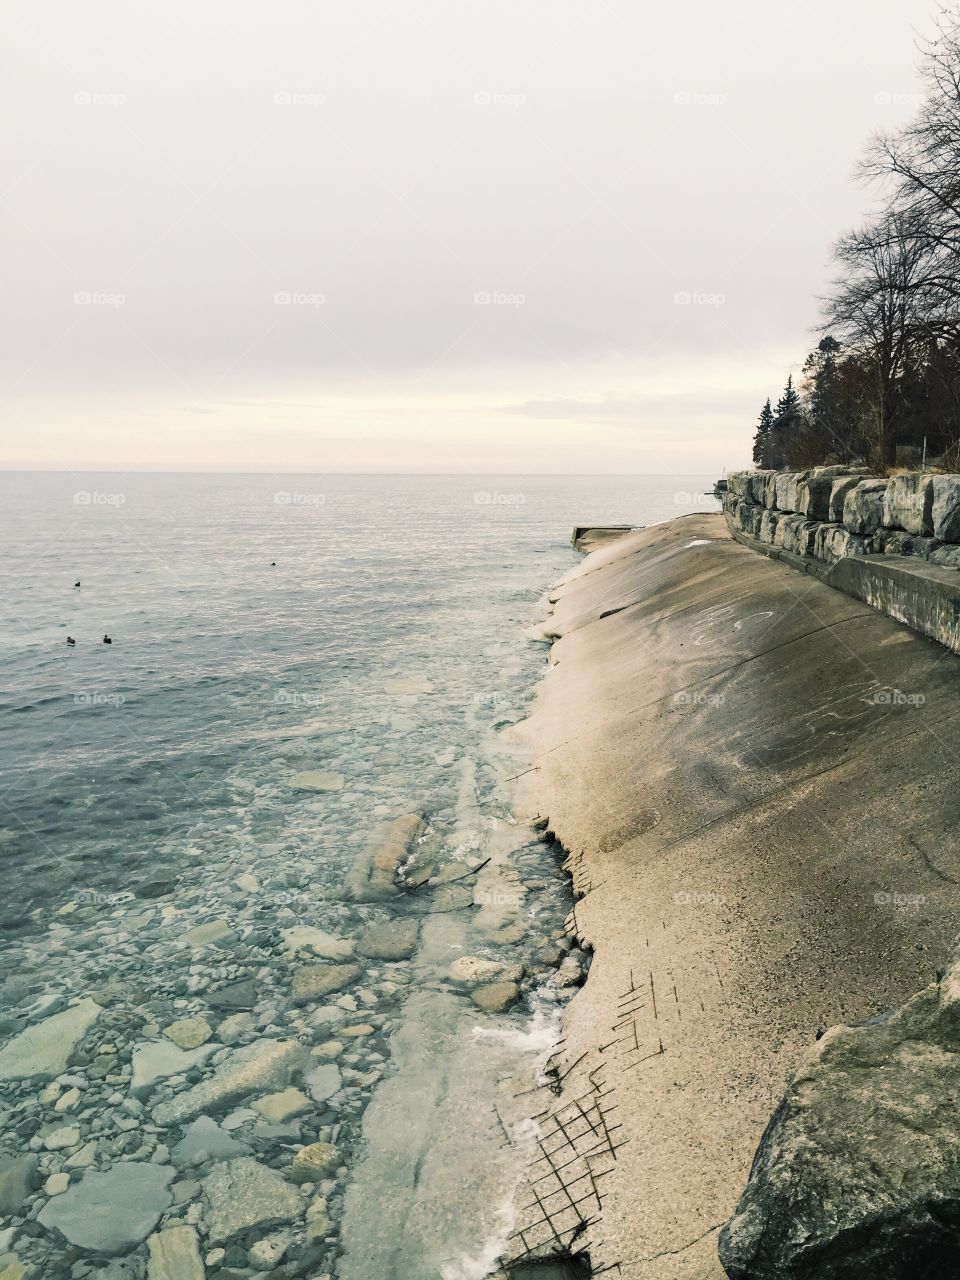 Water, Winter, Landscape, No Person, Beach